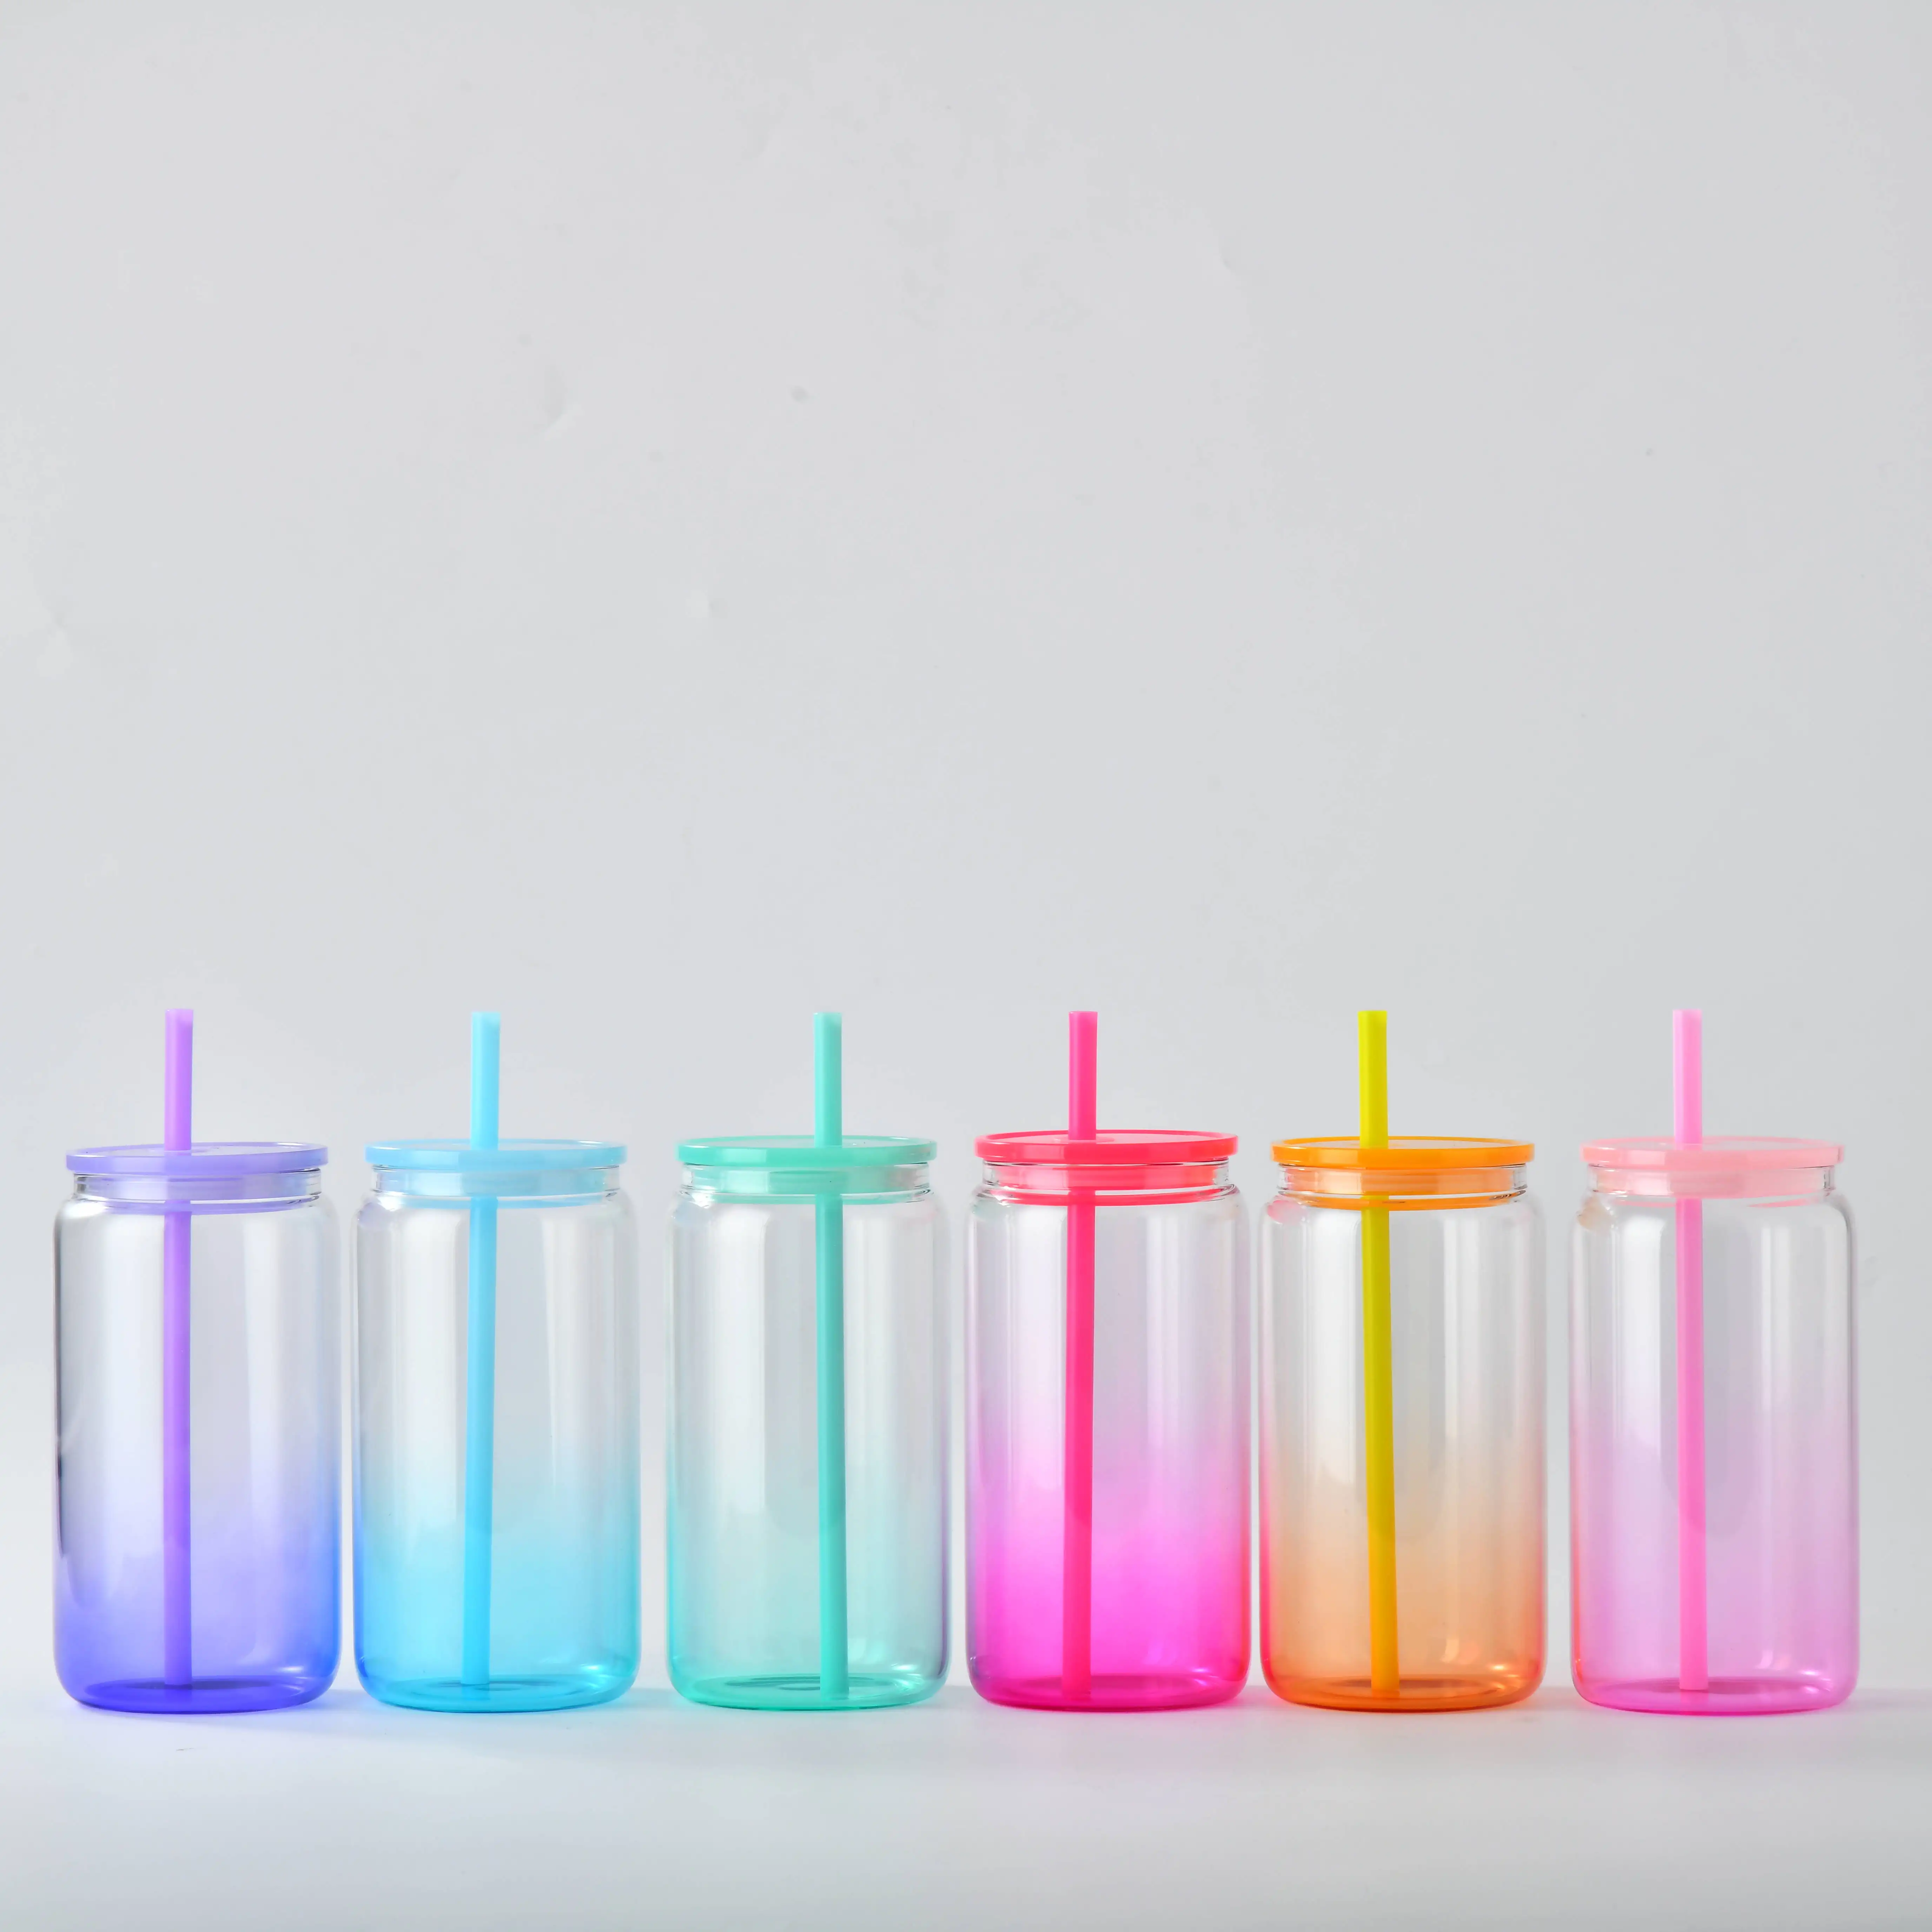 وعاء زجاجي بحجم 16 أونصة من المستودعات الأمريكية مع أغطية بلاستيكية ملونة وشفاطات